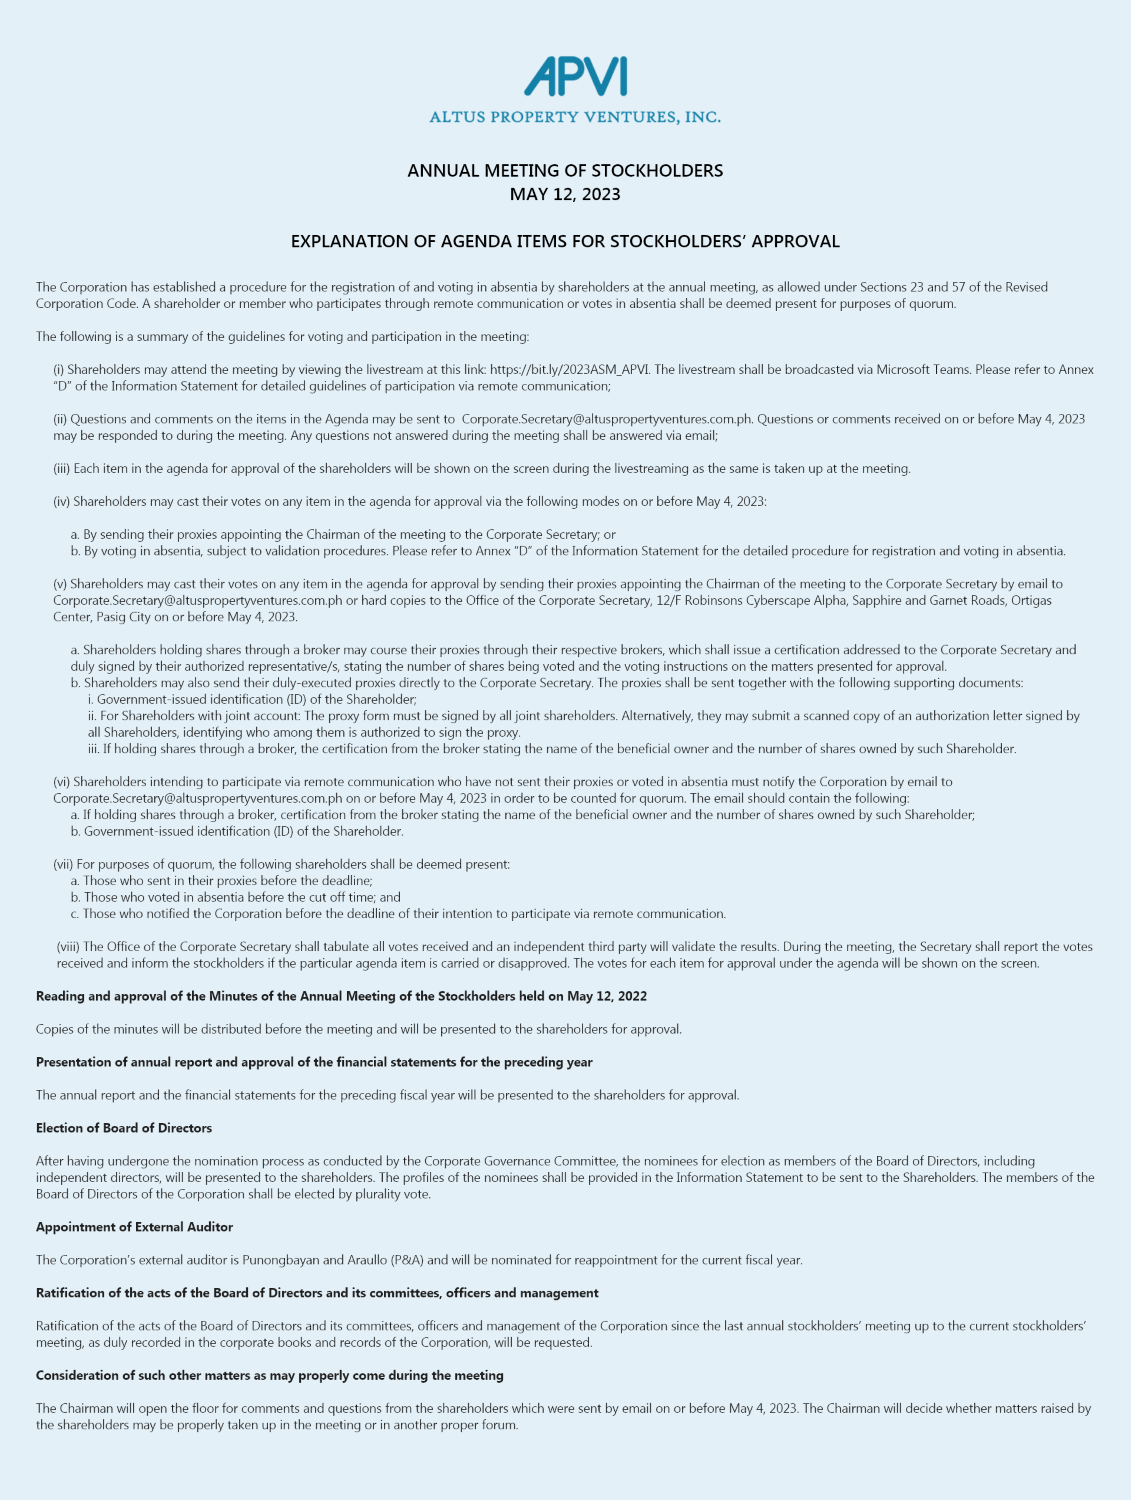 APVI ASM Notice 2023 part 2